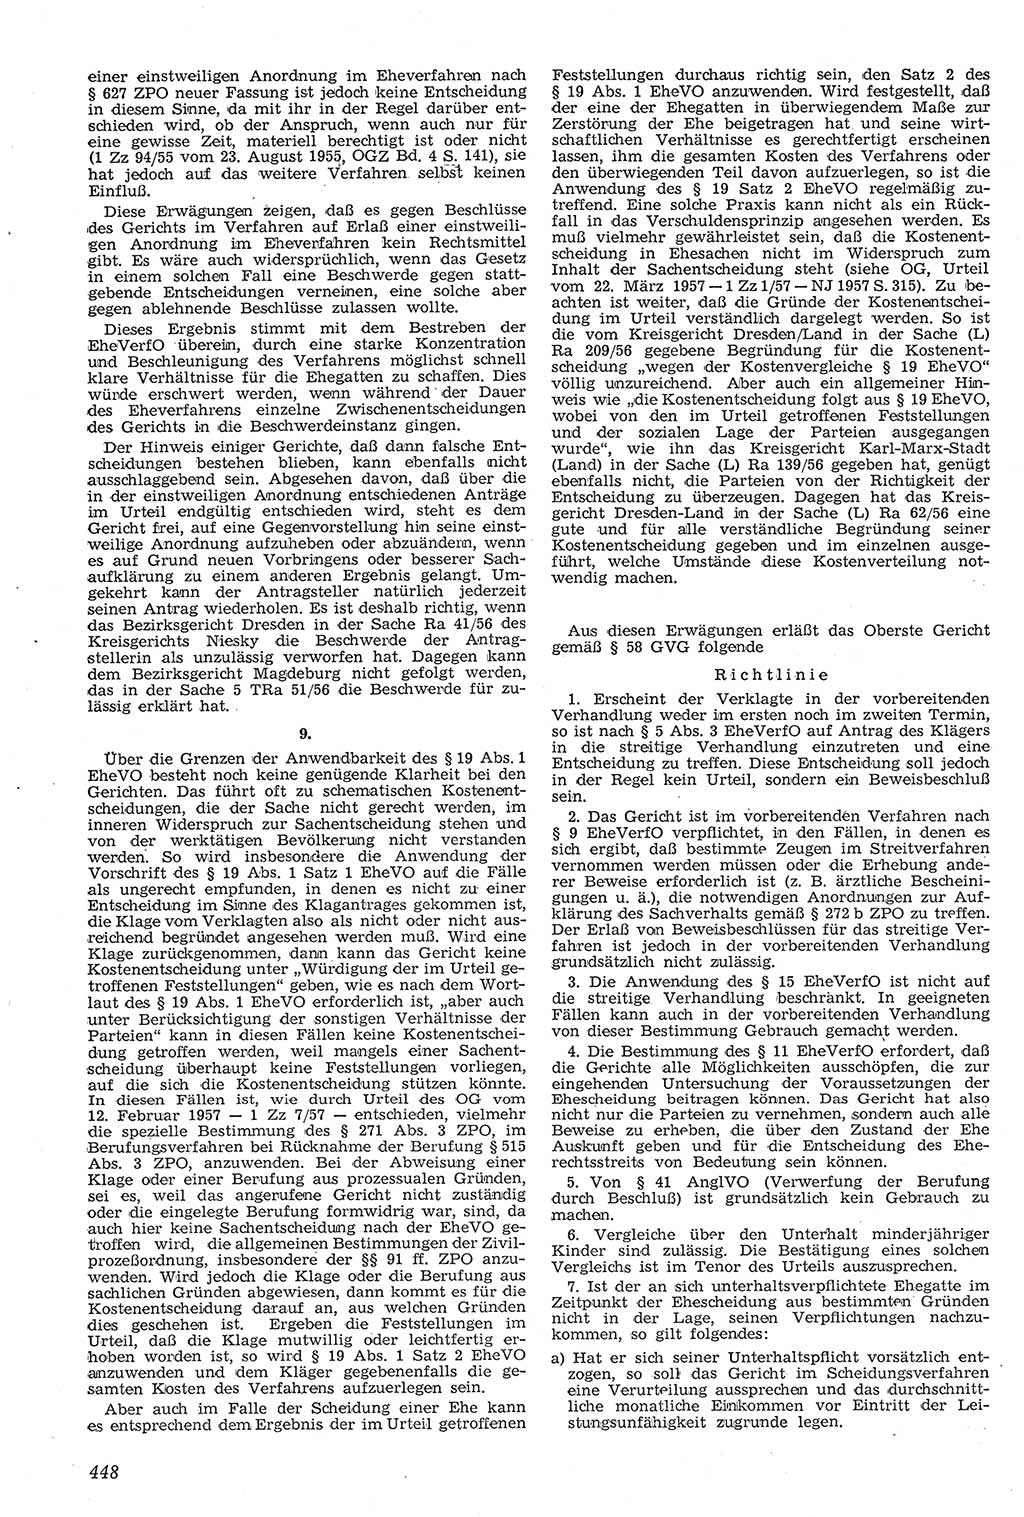 Neue Justiz (NJ), Zeitschrift für Recht und Rechtswissenschaft [Deutsche Demokratische Republik (DDR)], 11. Jahrgang 1957, Seite 448 (NJ DDR 1957, S. 448)